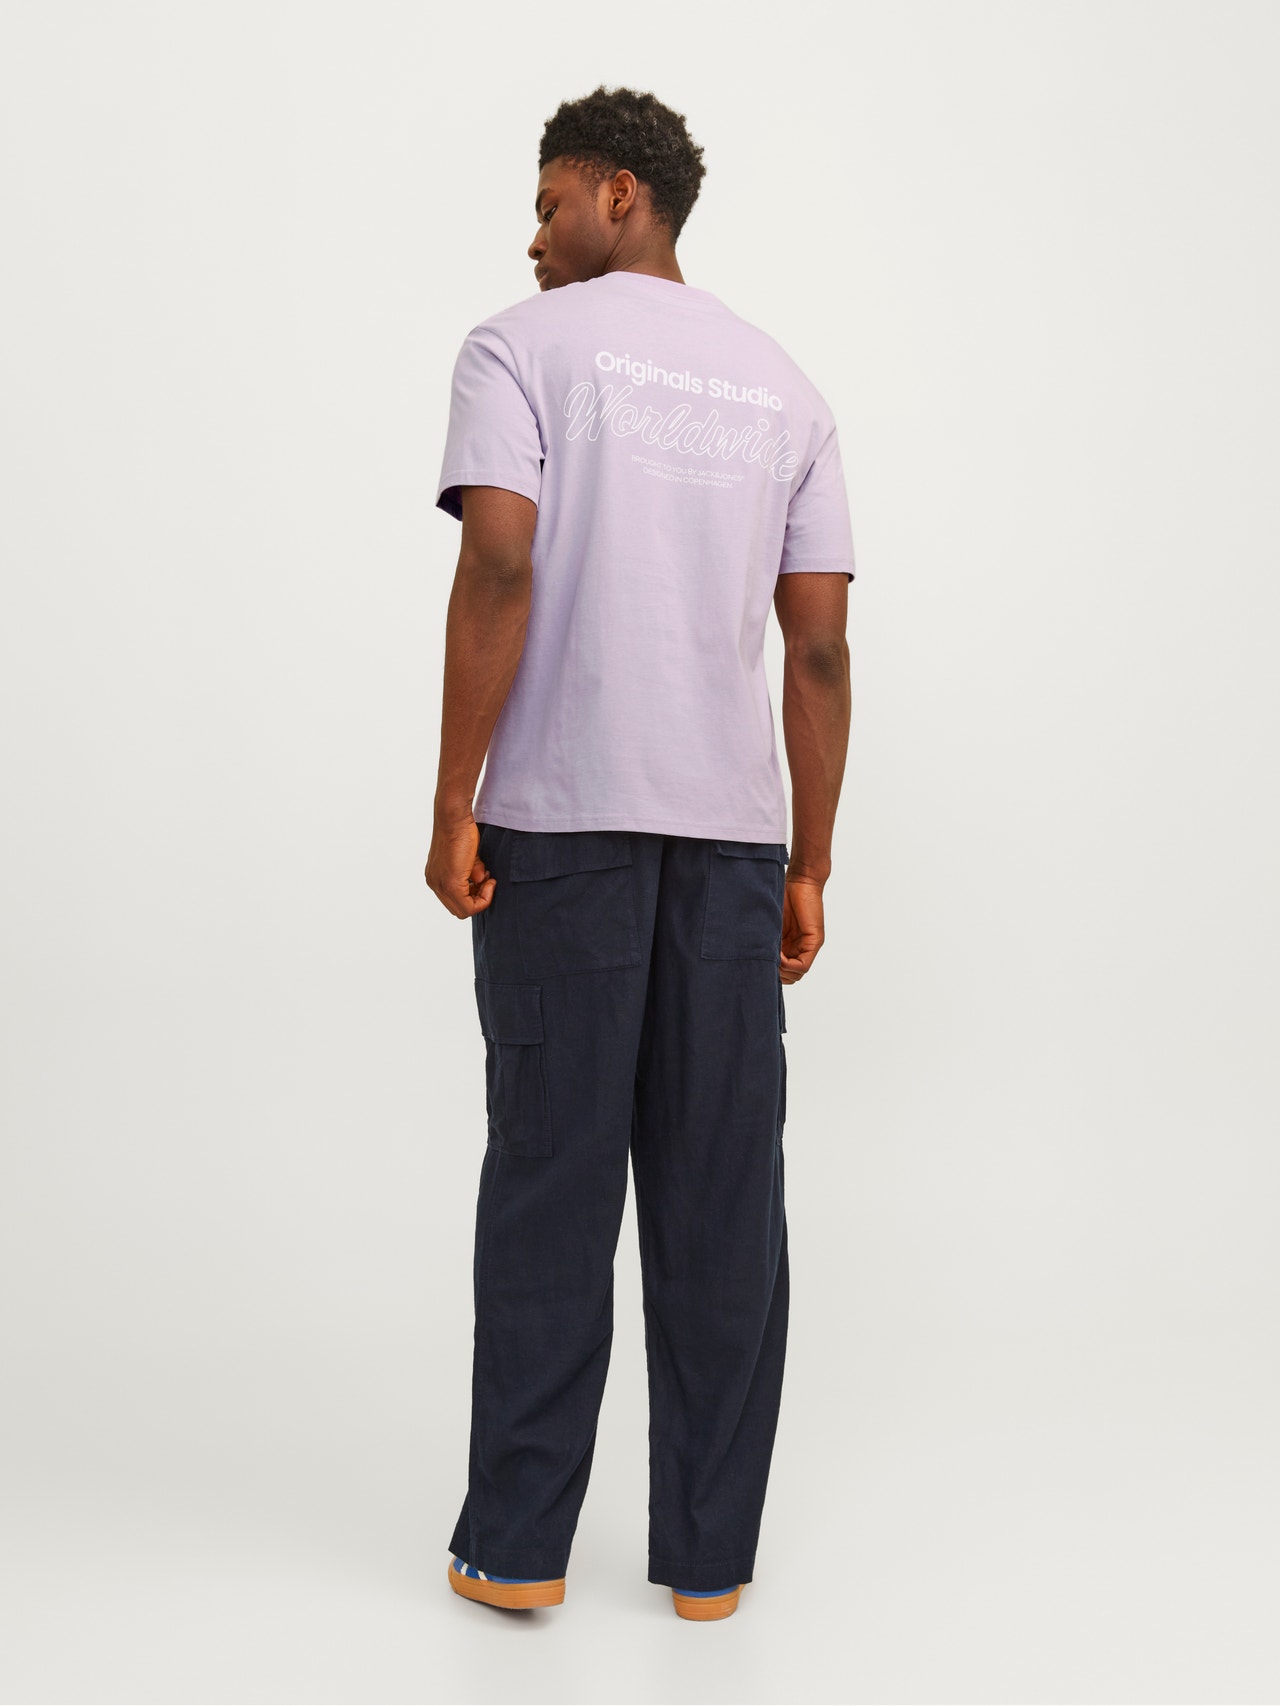 Jack & Jones Nadruk Okrągły dekolt T-shirt -Lavender Frost - 12240122